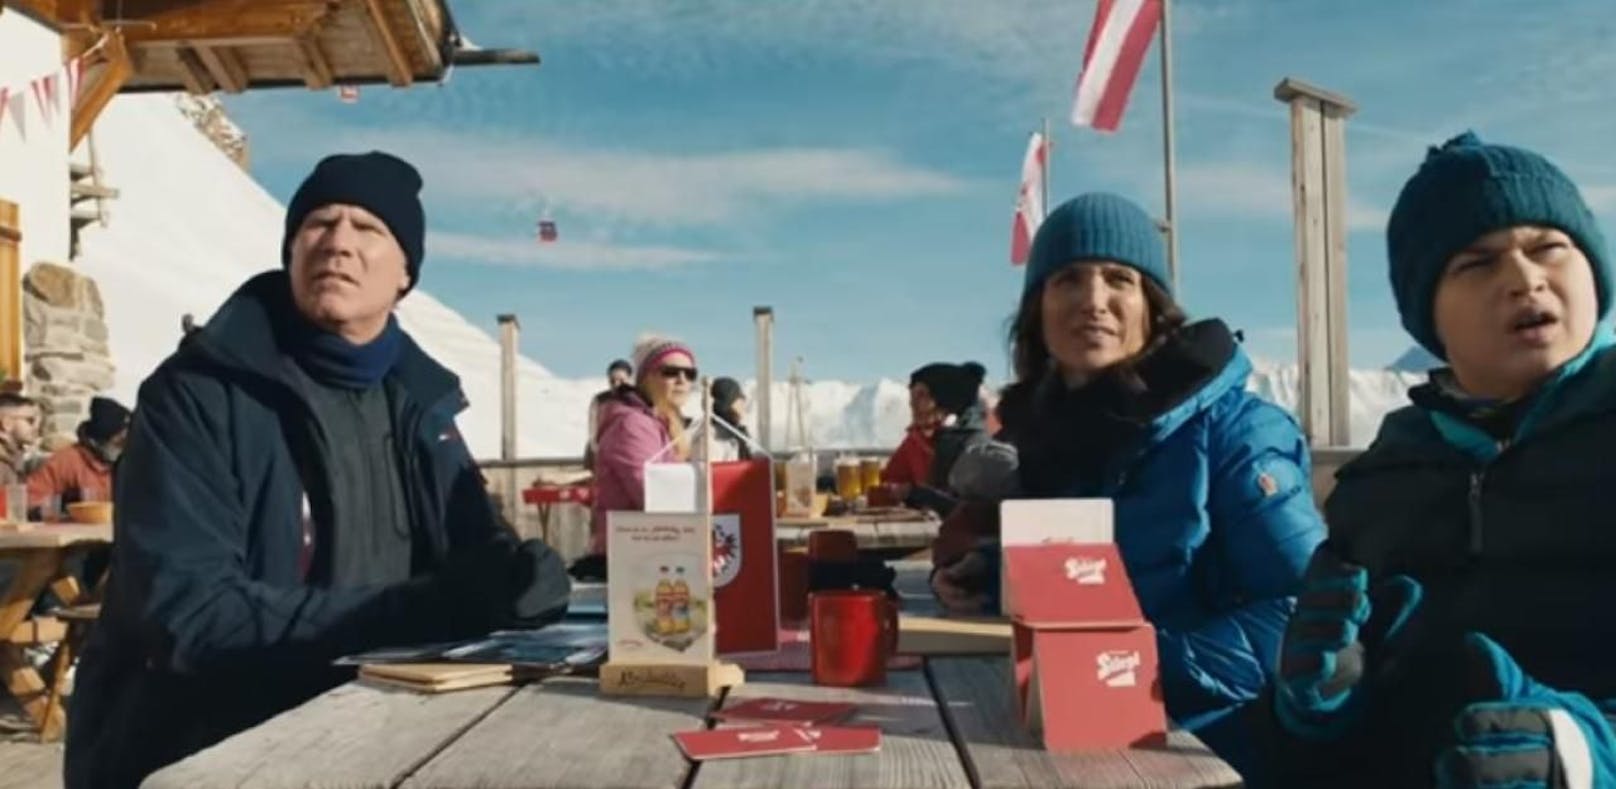 US-Komödie "Downhill" zeigt ersten Austro-Trailer